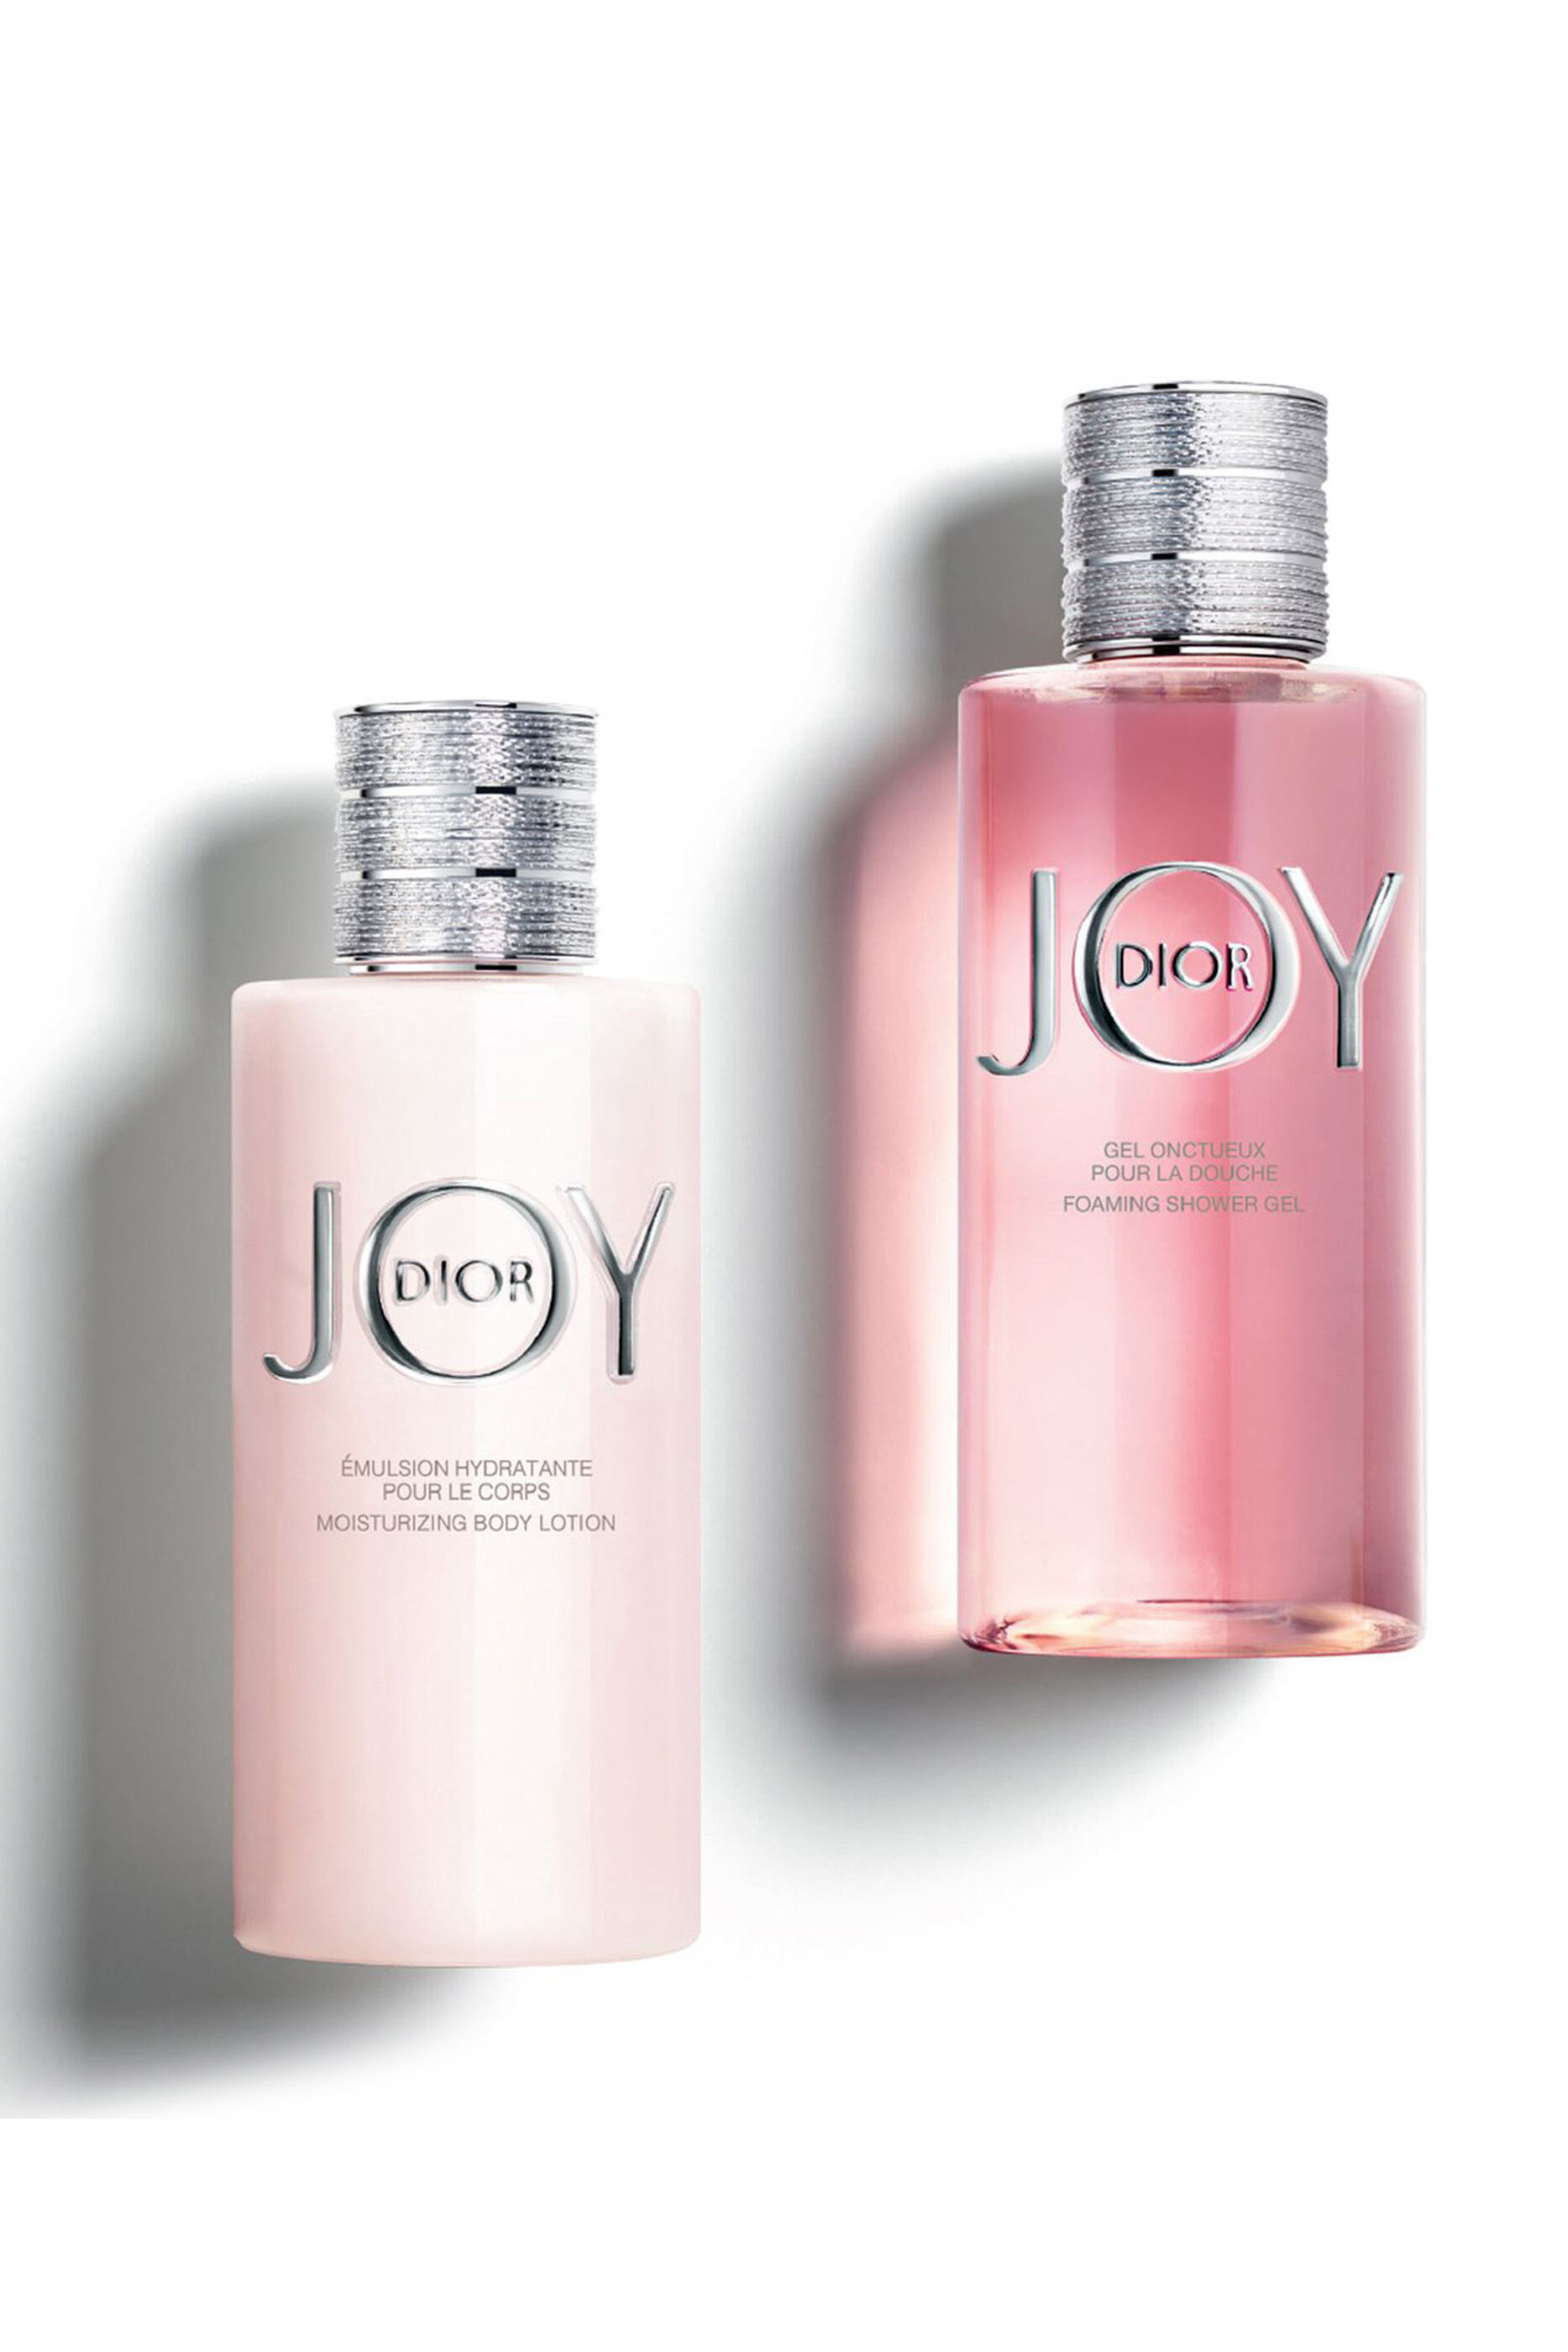 แท เจลอาบนำ Joy by Dior Foaming Shower Gel 200 ml  Shopee Thailand